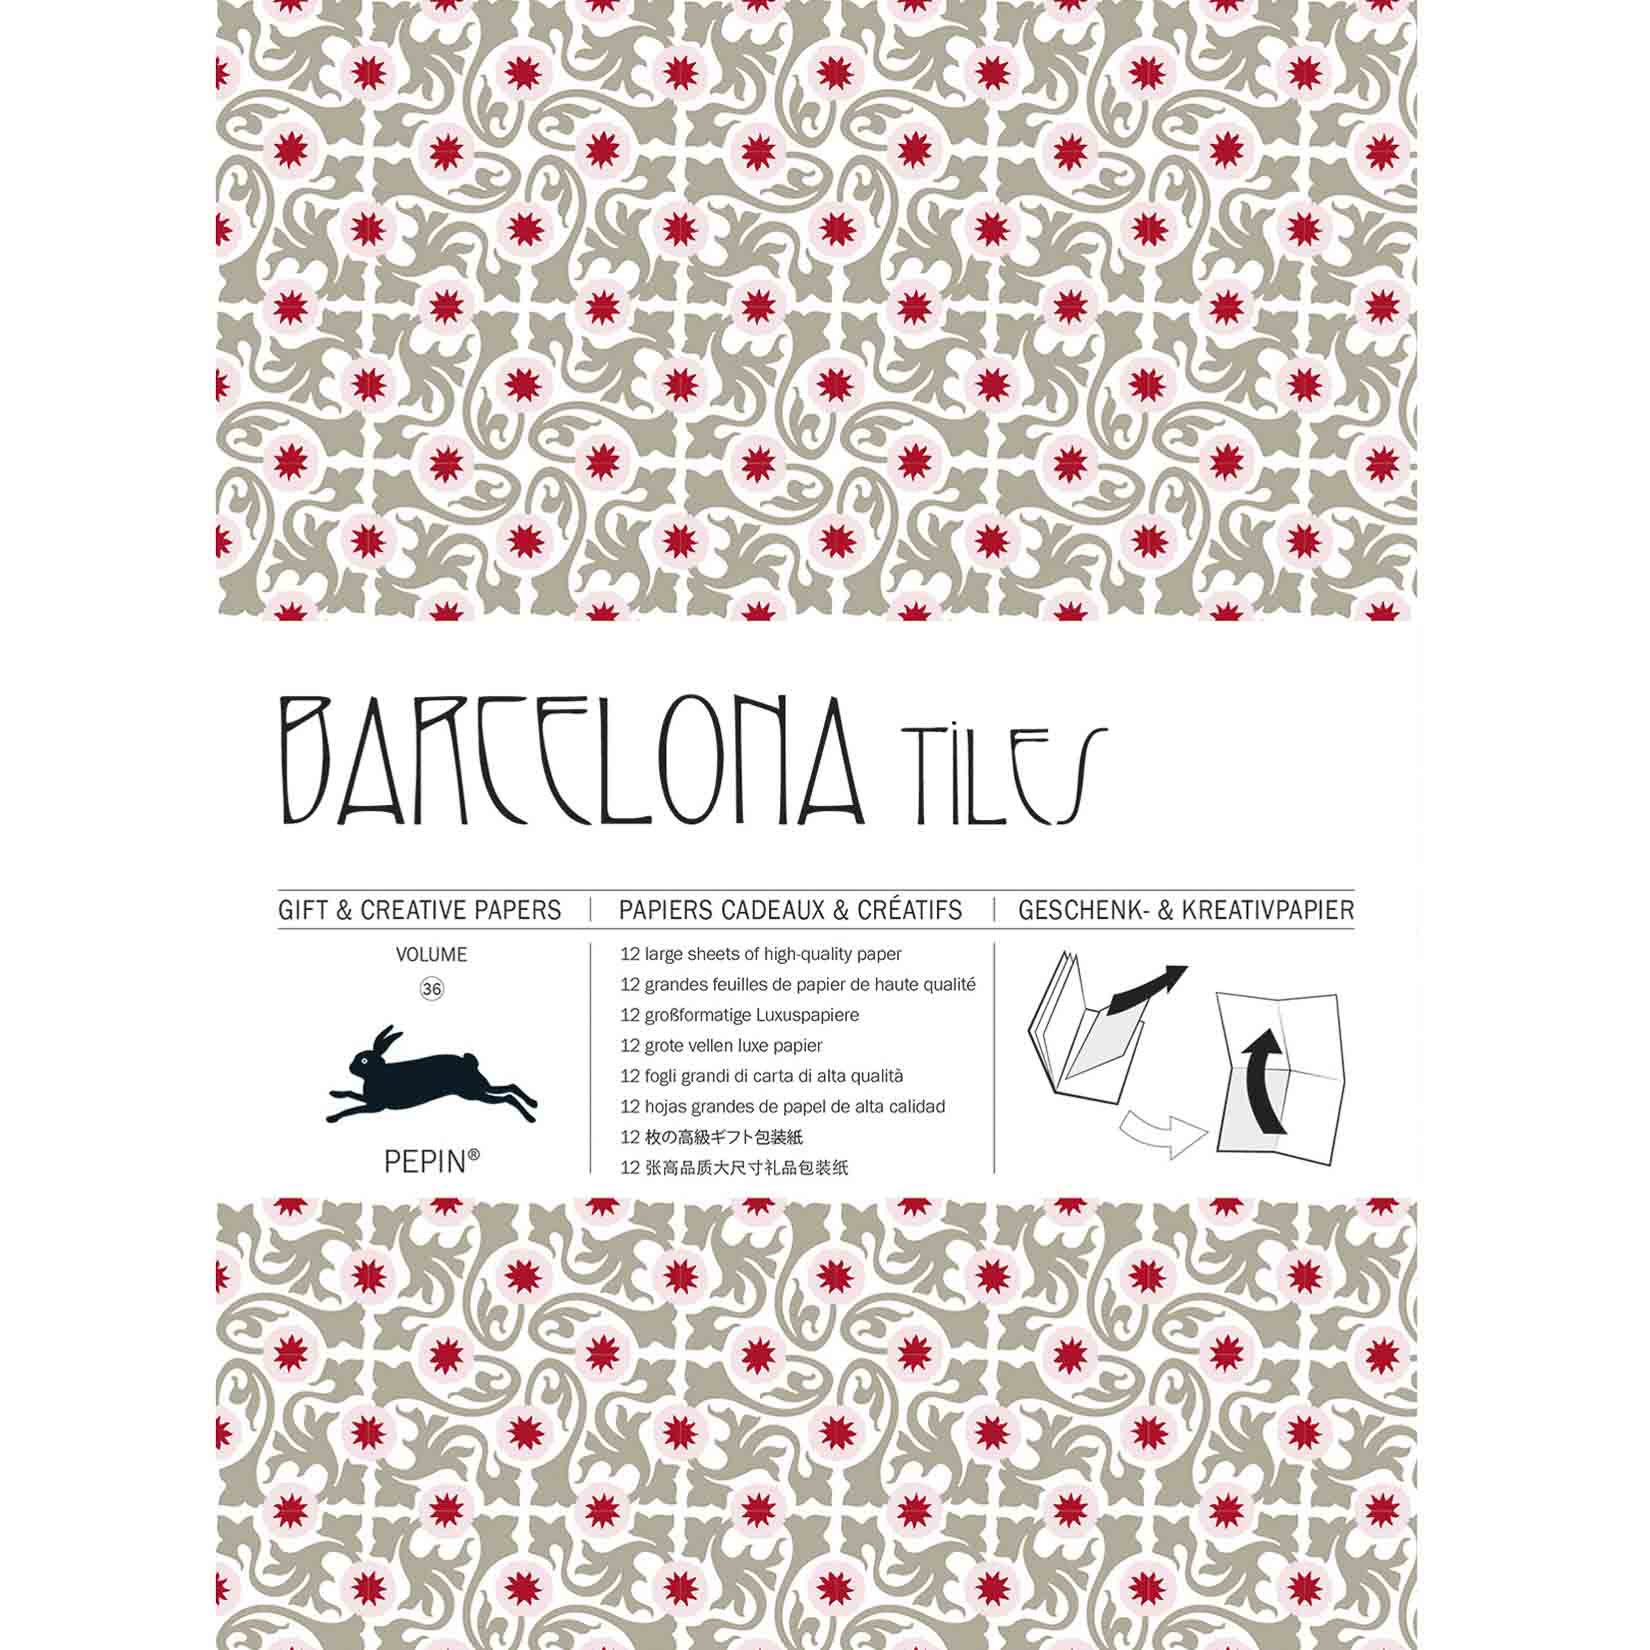 Pepin Press Geschenkpapierbuch Barcelona Tiles Fliesen Azulejos Gift & Creative Paper Book Kreativpapier Geschenkpapier Bastelbuch